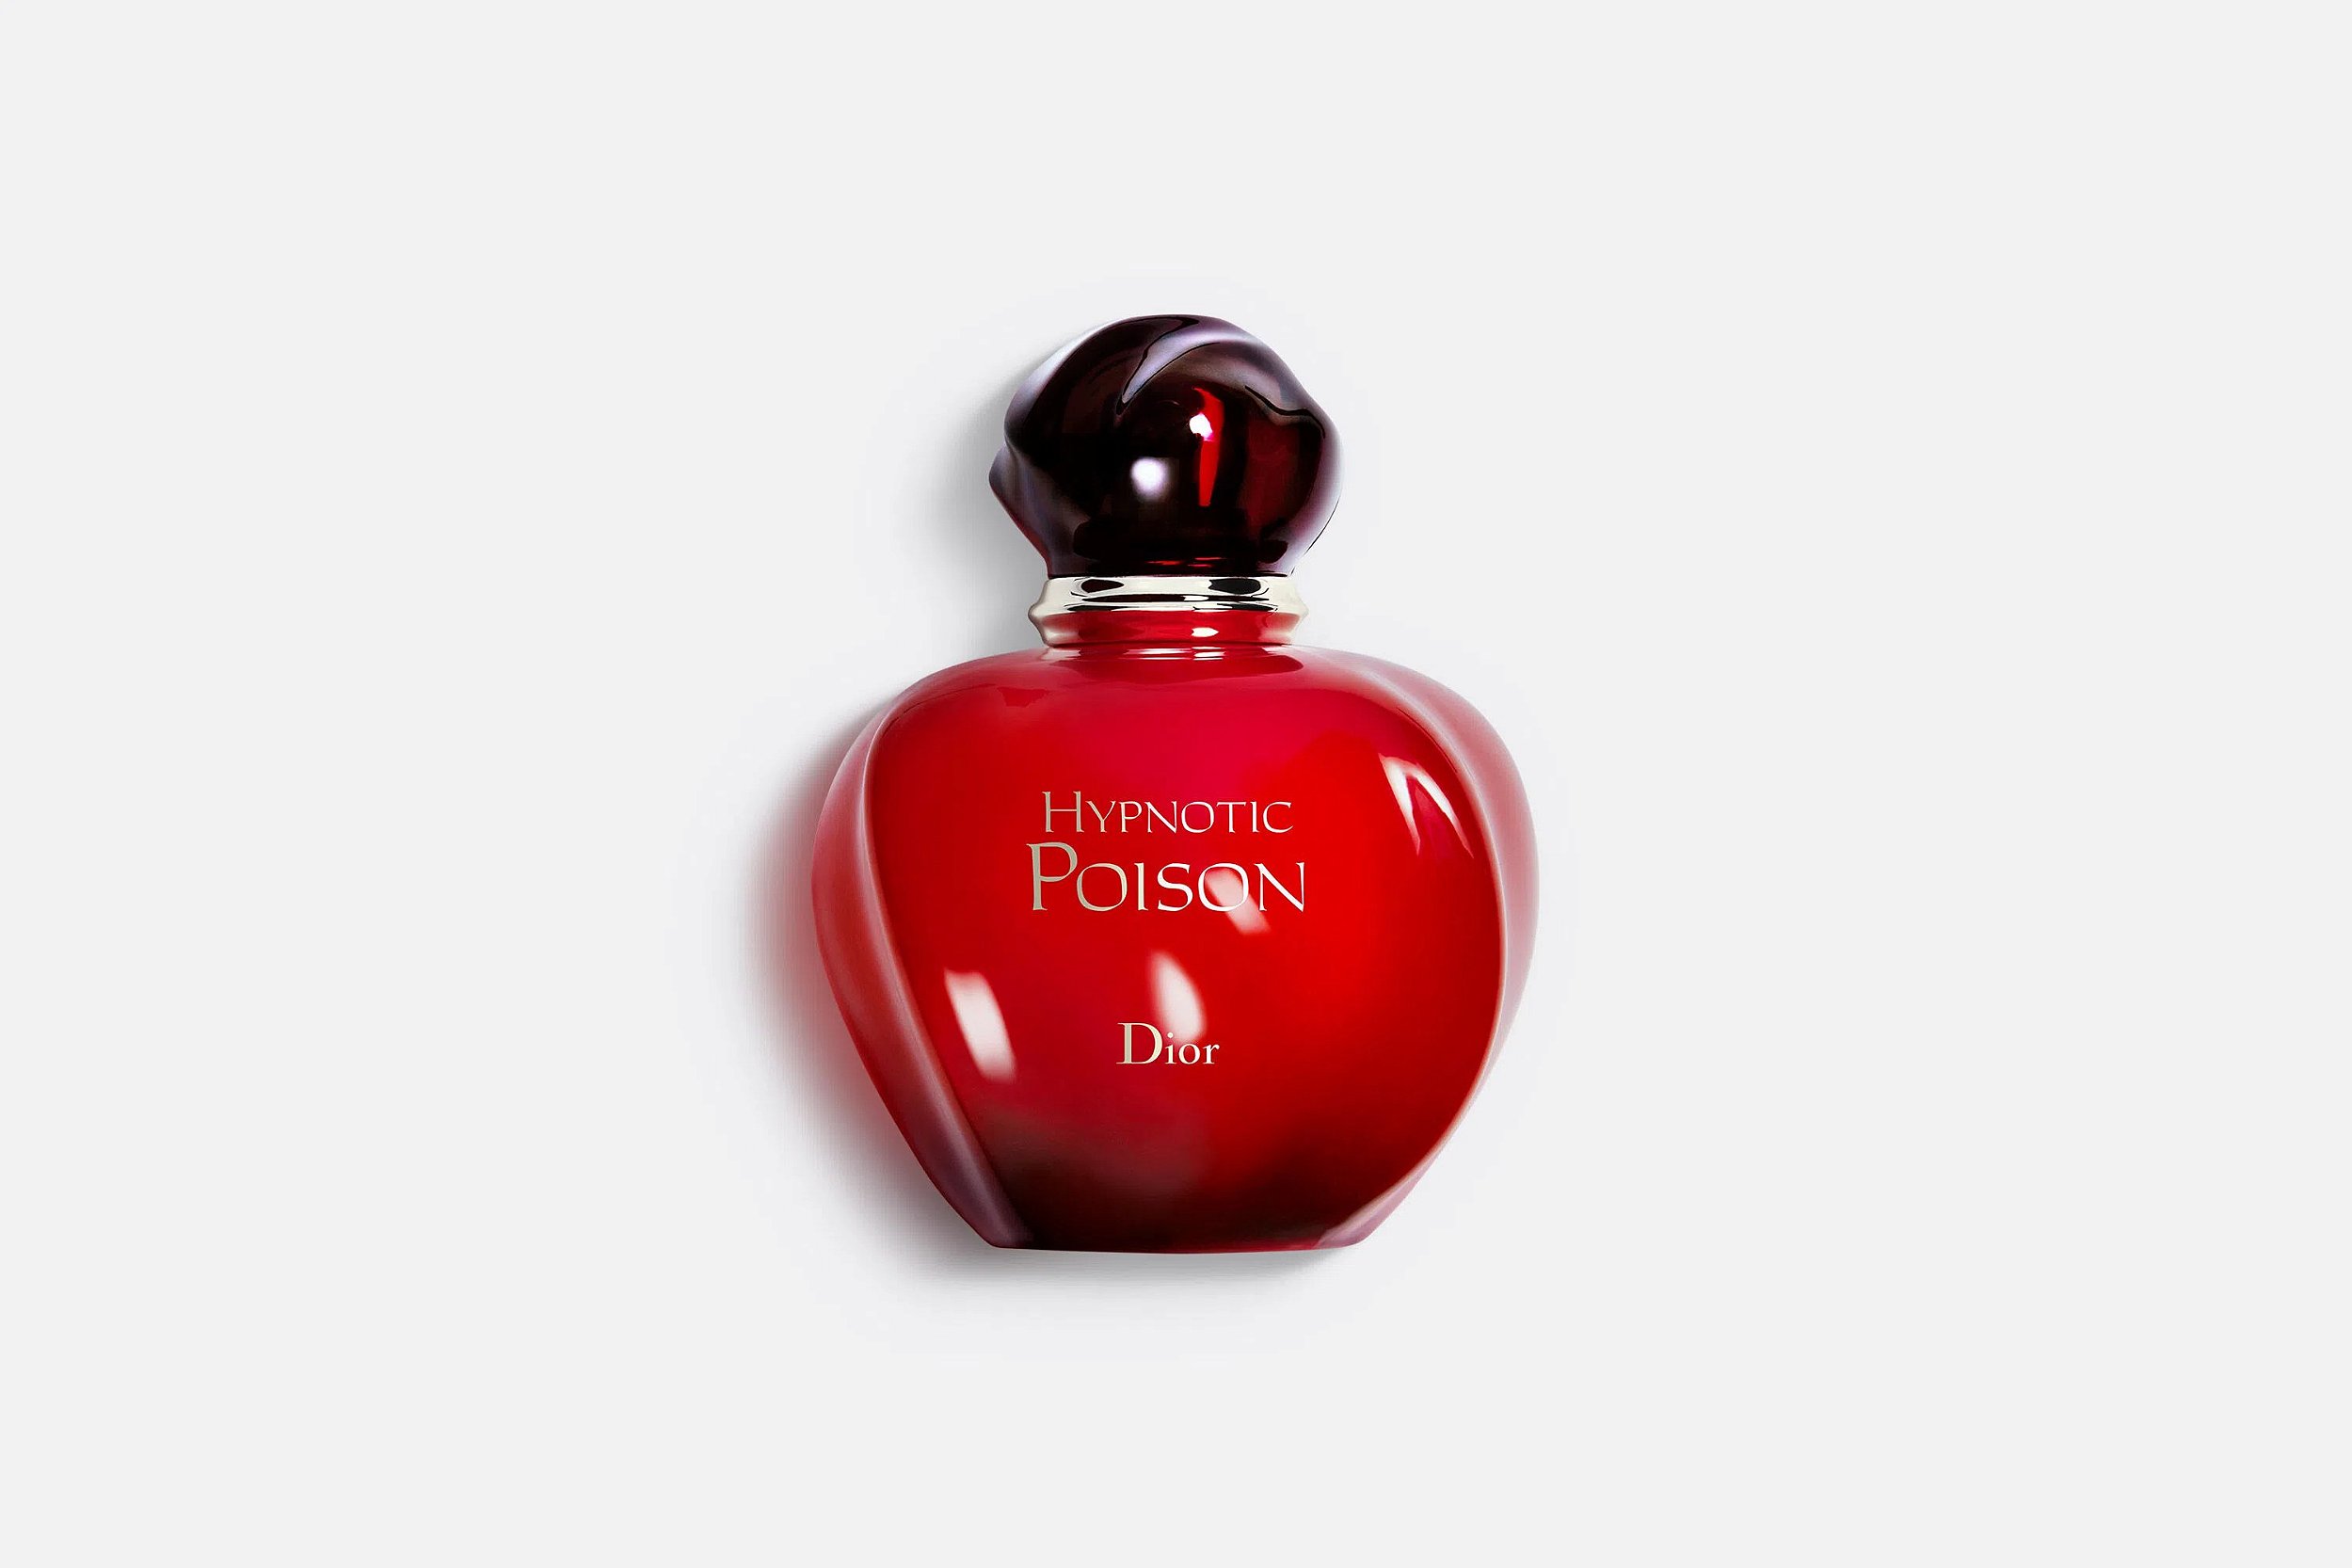 Perfume Hypnotic Poison Dior - EDT 100ml - Marlene Beauty - Ampla gama de  perfumes importados e produtos de beleza